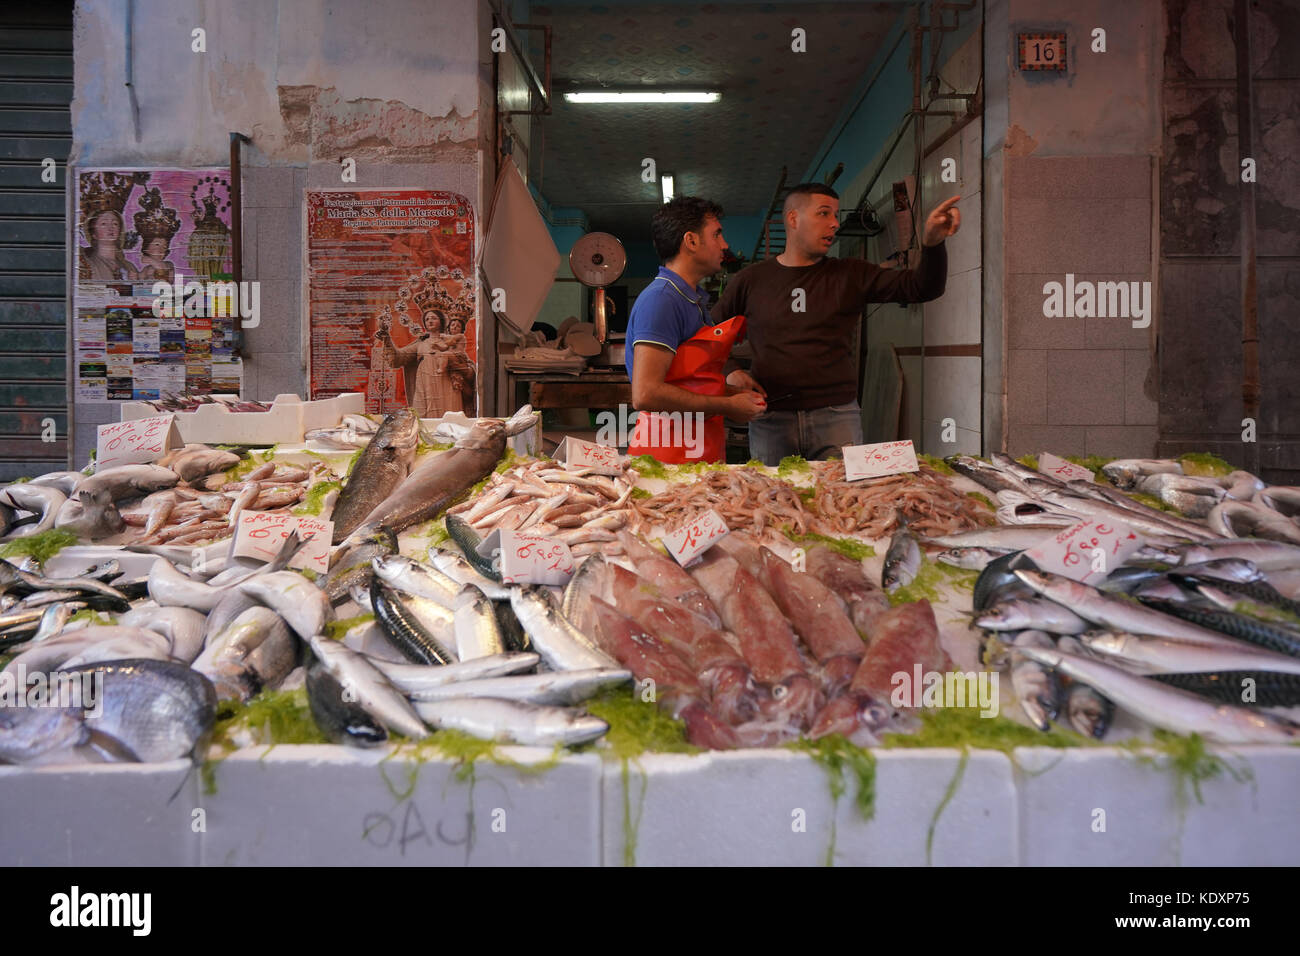 Due fornitori del mercato a un pesce di stallo in un mercato di palermo. da una serie di foto di viaggio in Sicilia, Italia. photo Data: martedì 10 ottobre, 2017. pho Foto Stock